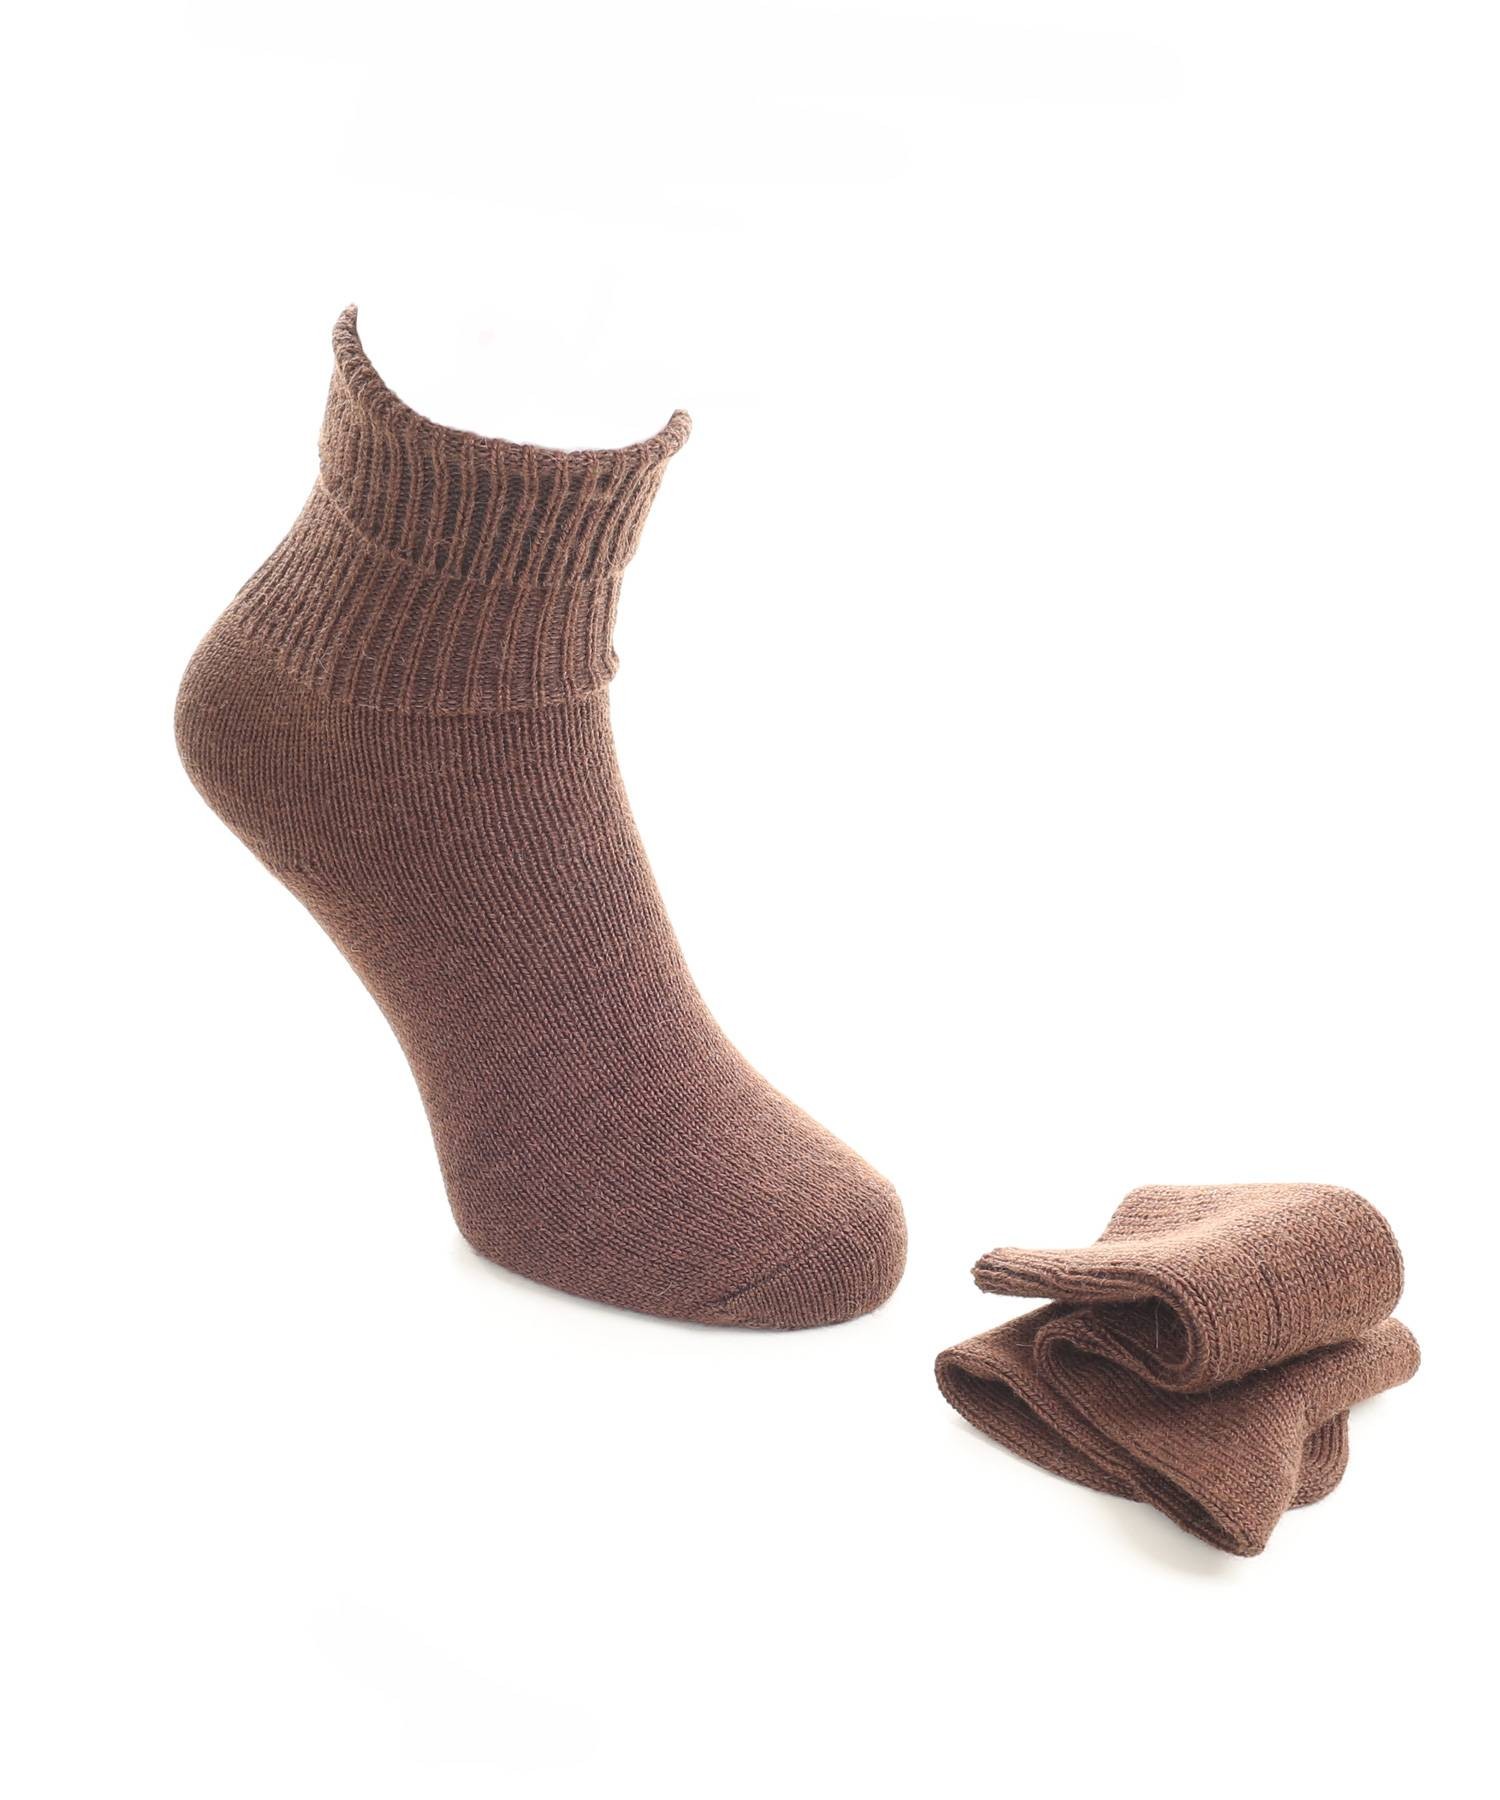 Alpaca & Wool Plain Socks Brown in Alpaca Clothing Co Range